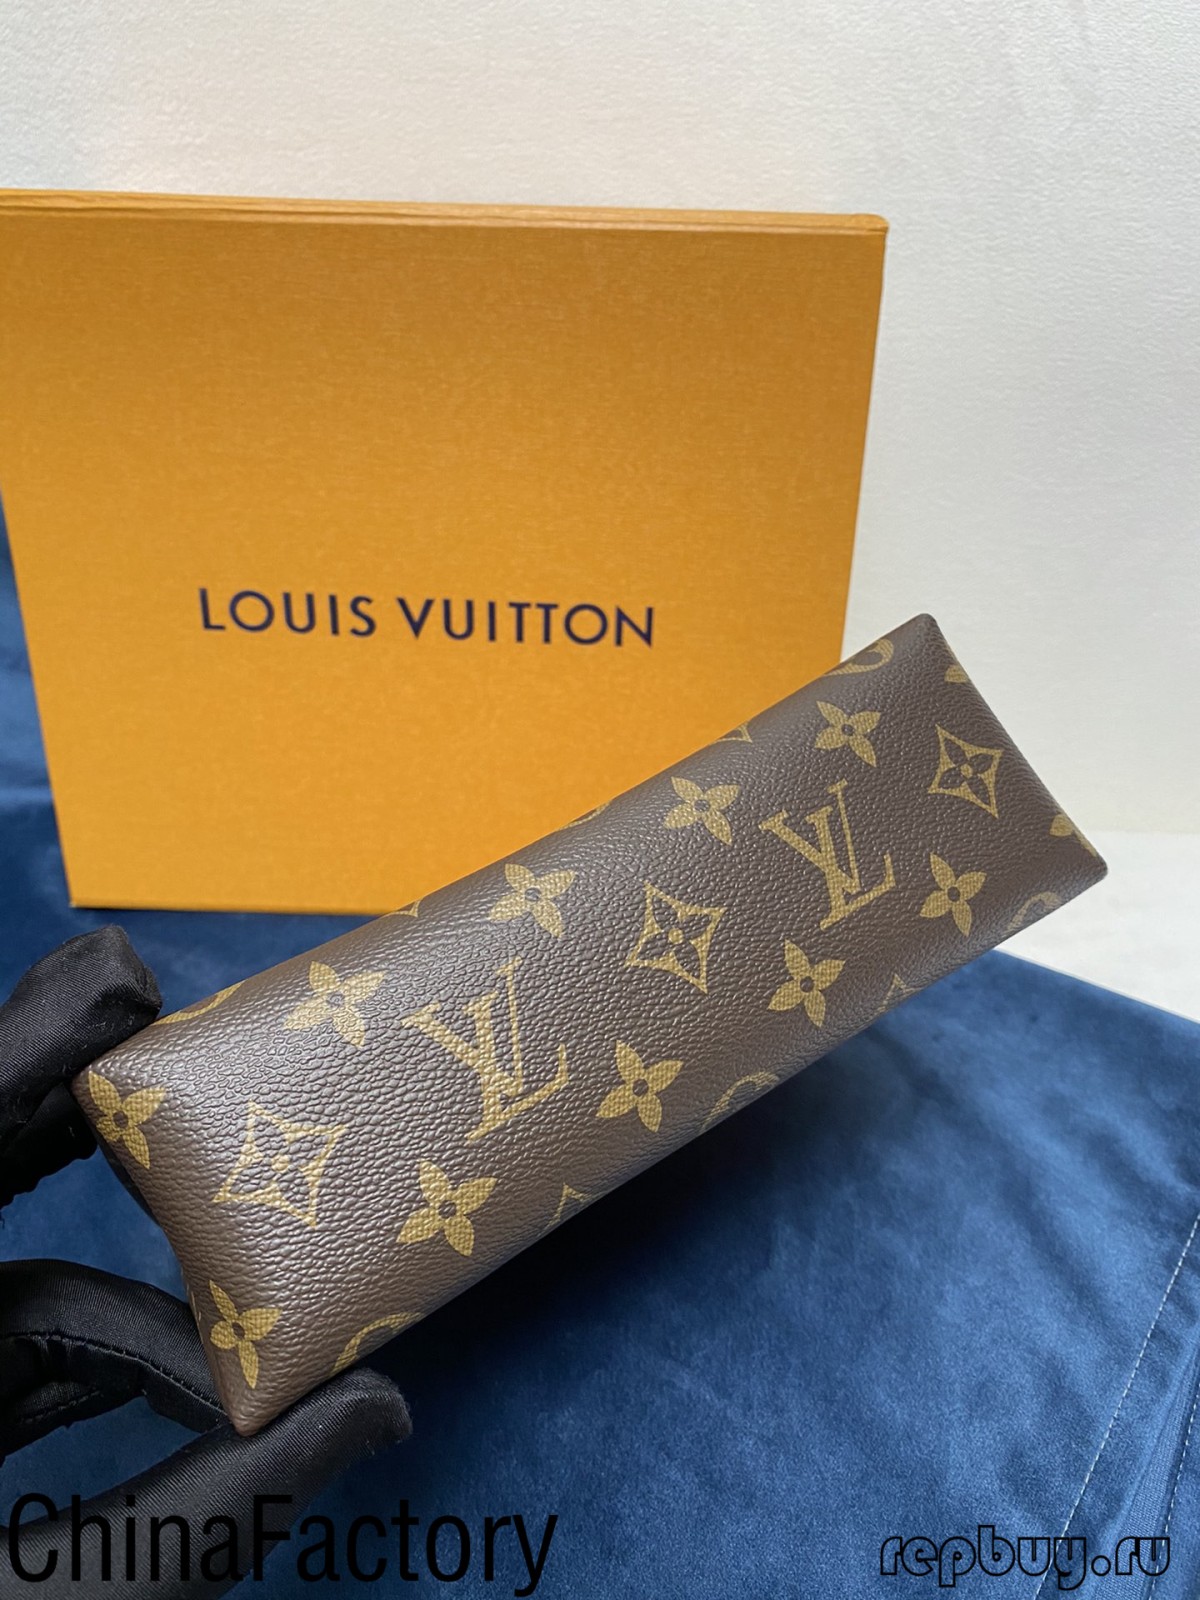 รีวิวกระเป๋าจำลอง aaa บางชิ้นเพื่อแบ่งปัน (ฉบับใหม่ 2022) - ร้านค้าออนไลน์กระเป๋าปลอม Louis Vuitton คุณภาพดีที่สุด, กระเป๋าออกแบบแบบจำลอง ru